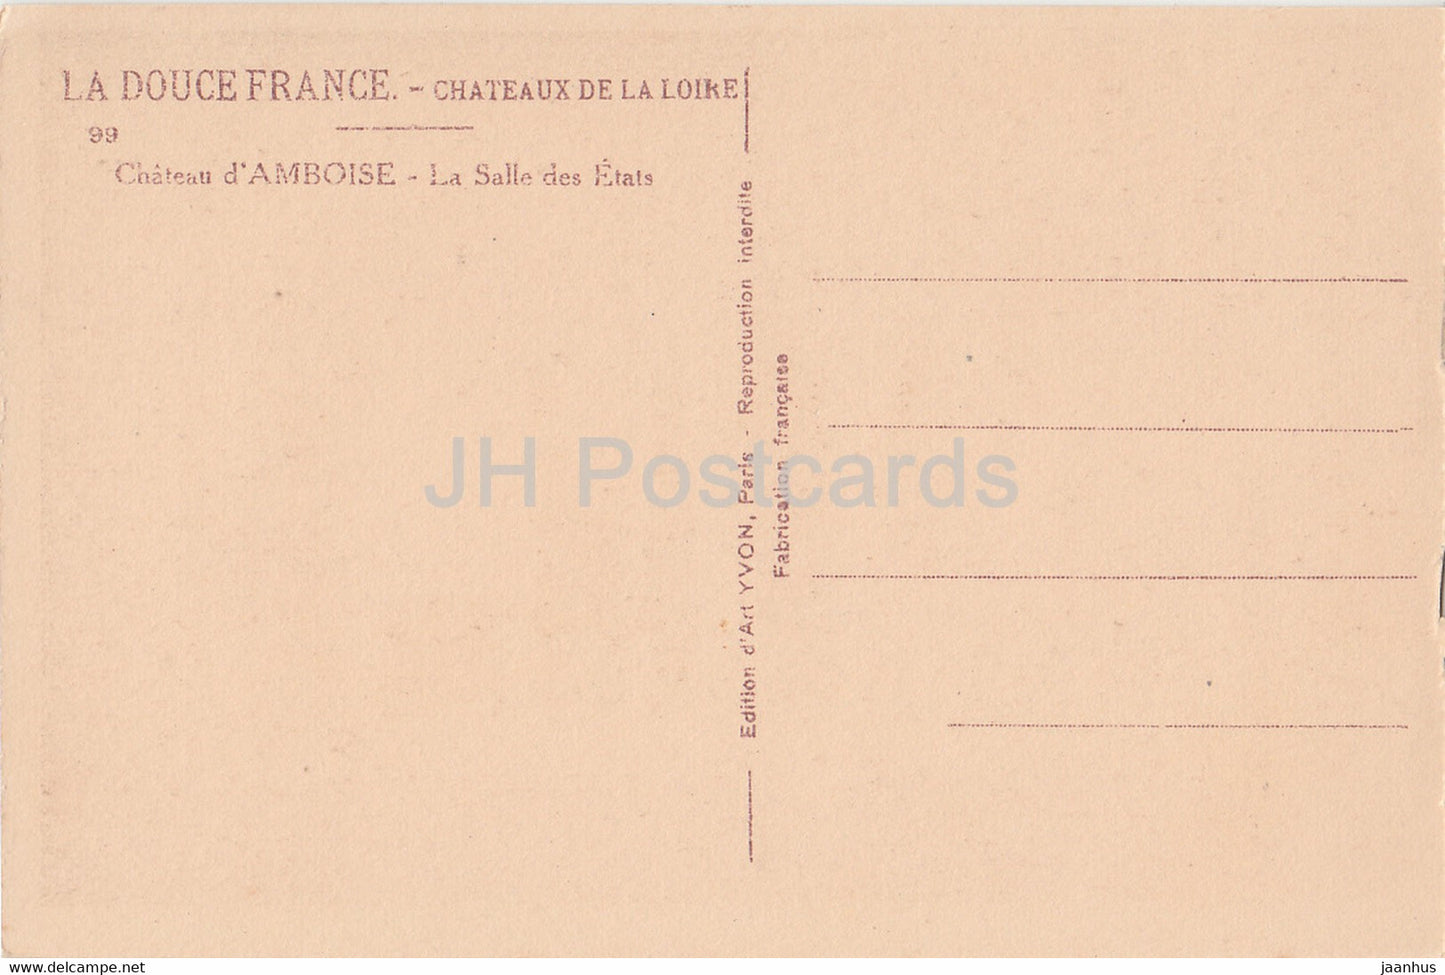 Chateau d'Amboise - La Salle des Etats - 99 - Schloss - alte Postkarte - Frankreich - unbenutzt